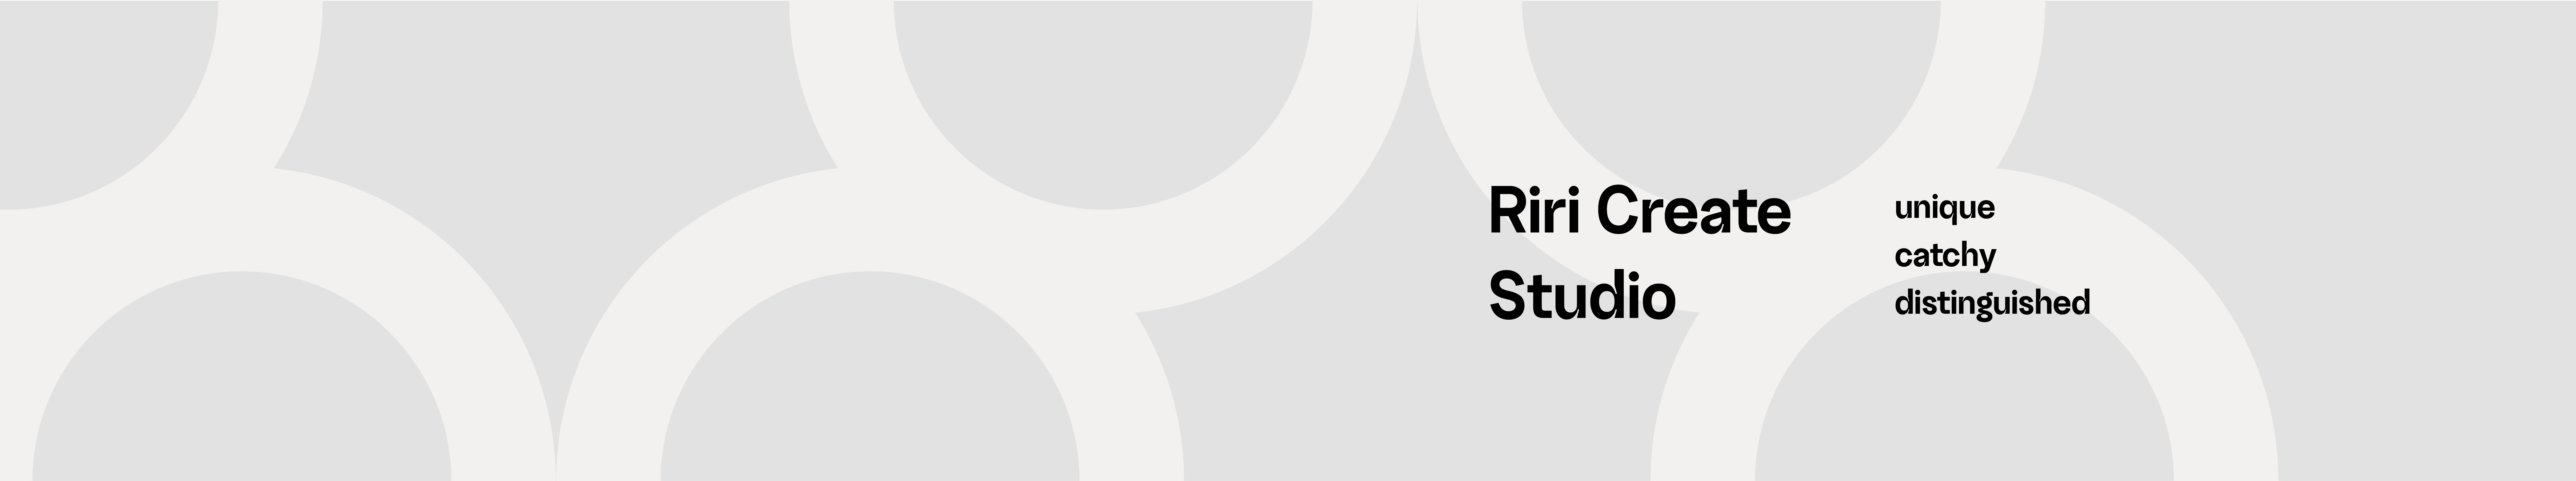 Riri Create Studio's profile banner